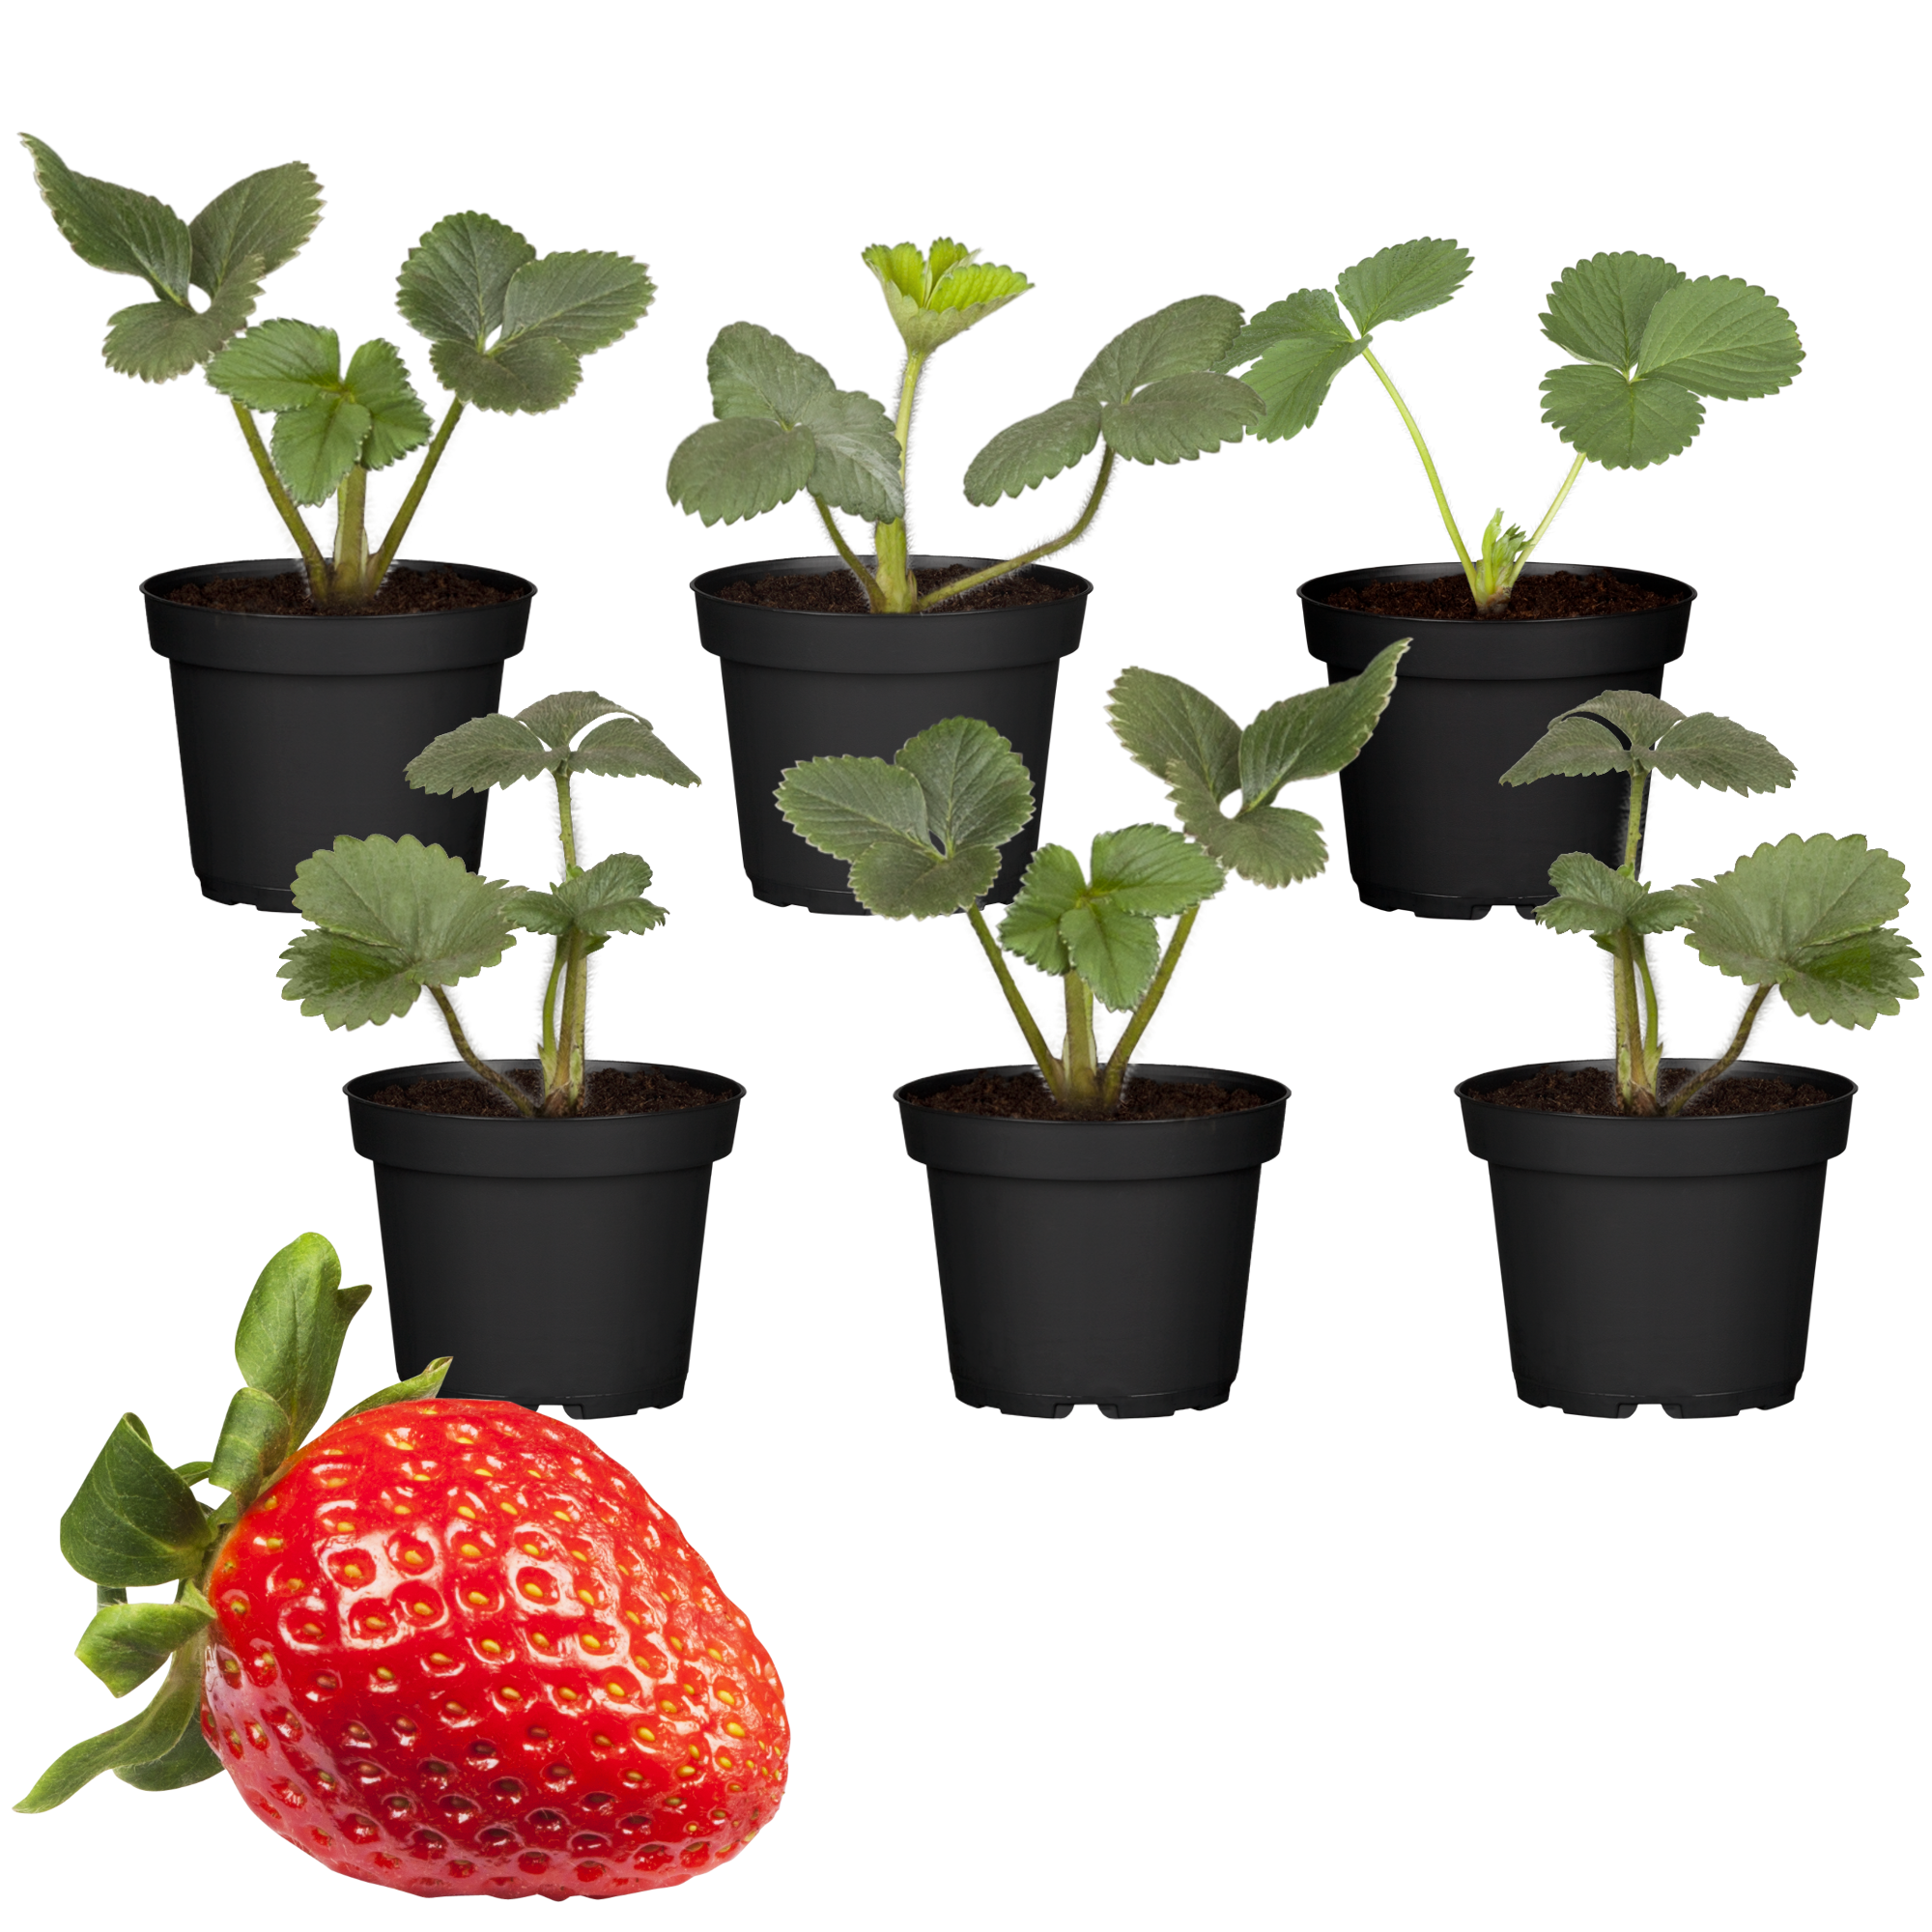 Erdbeere 'Ostara' 9 cm Topf, 6er-Set + product picture